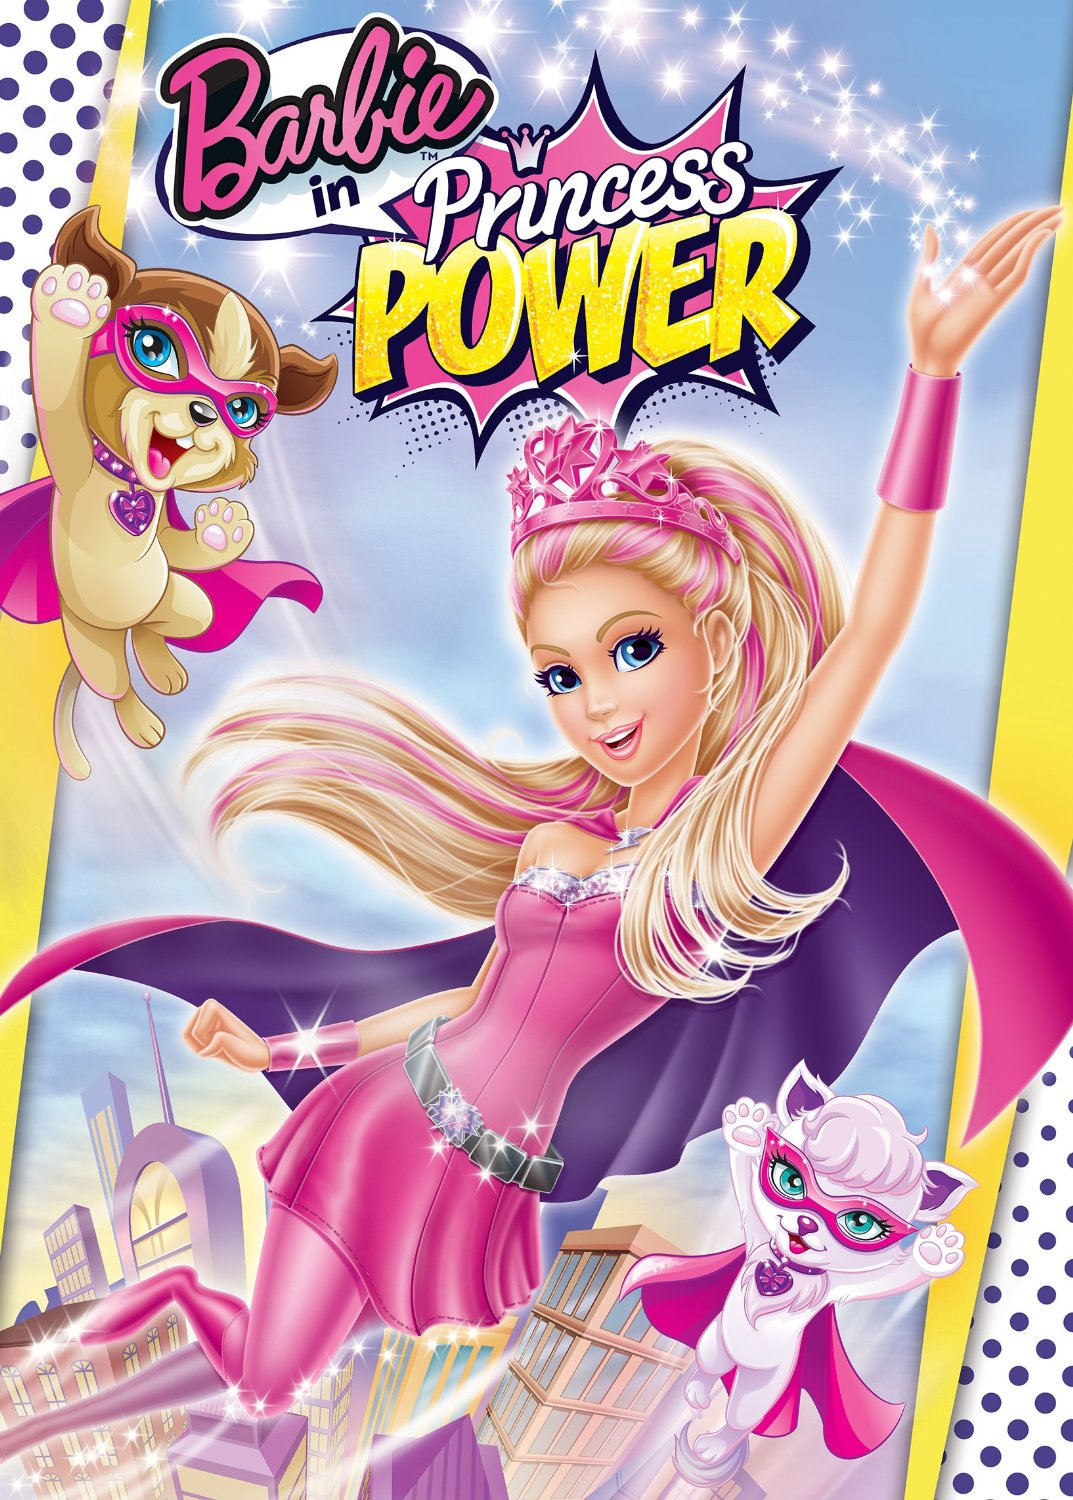 Barbie in Princess Power | Barbie Movies Wiki | Fandom